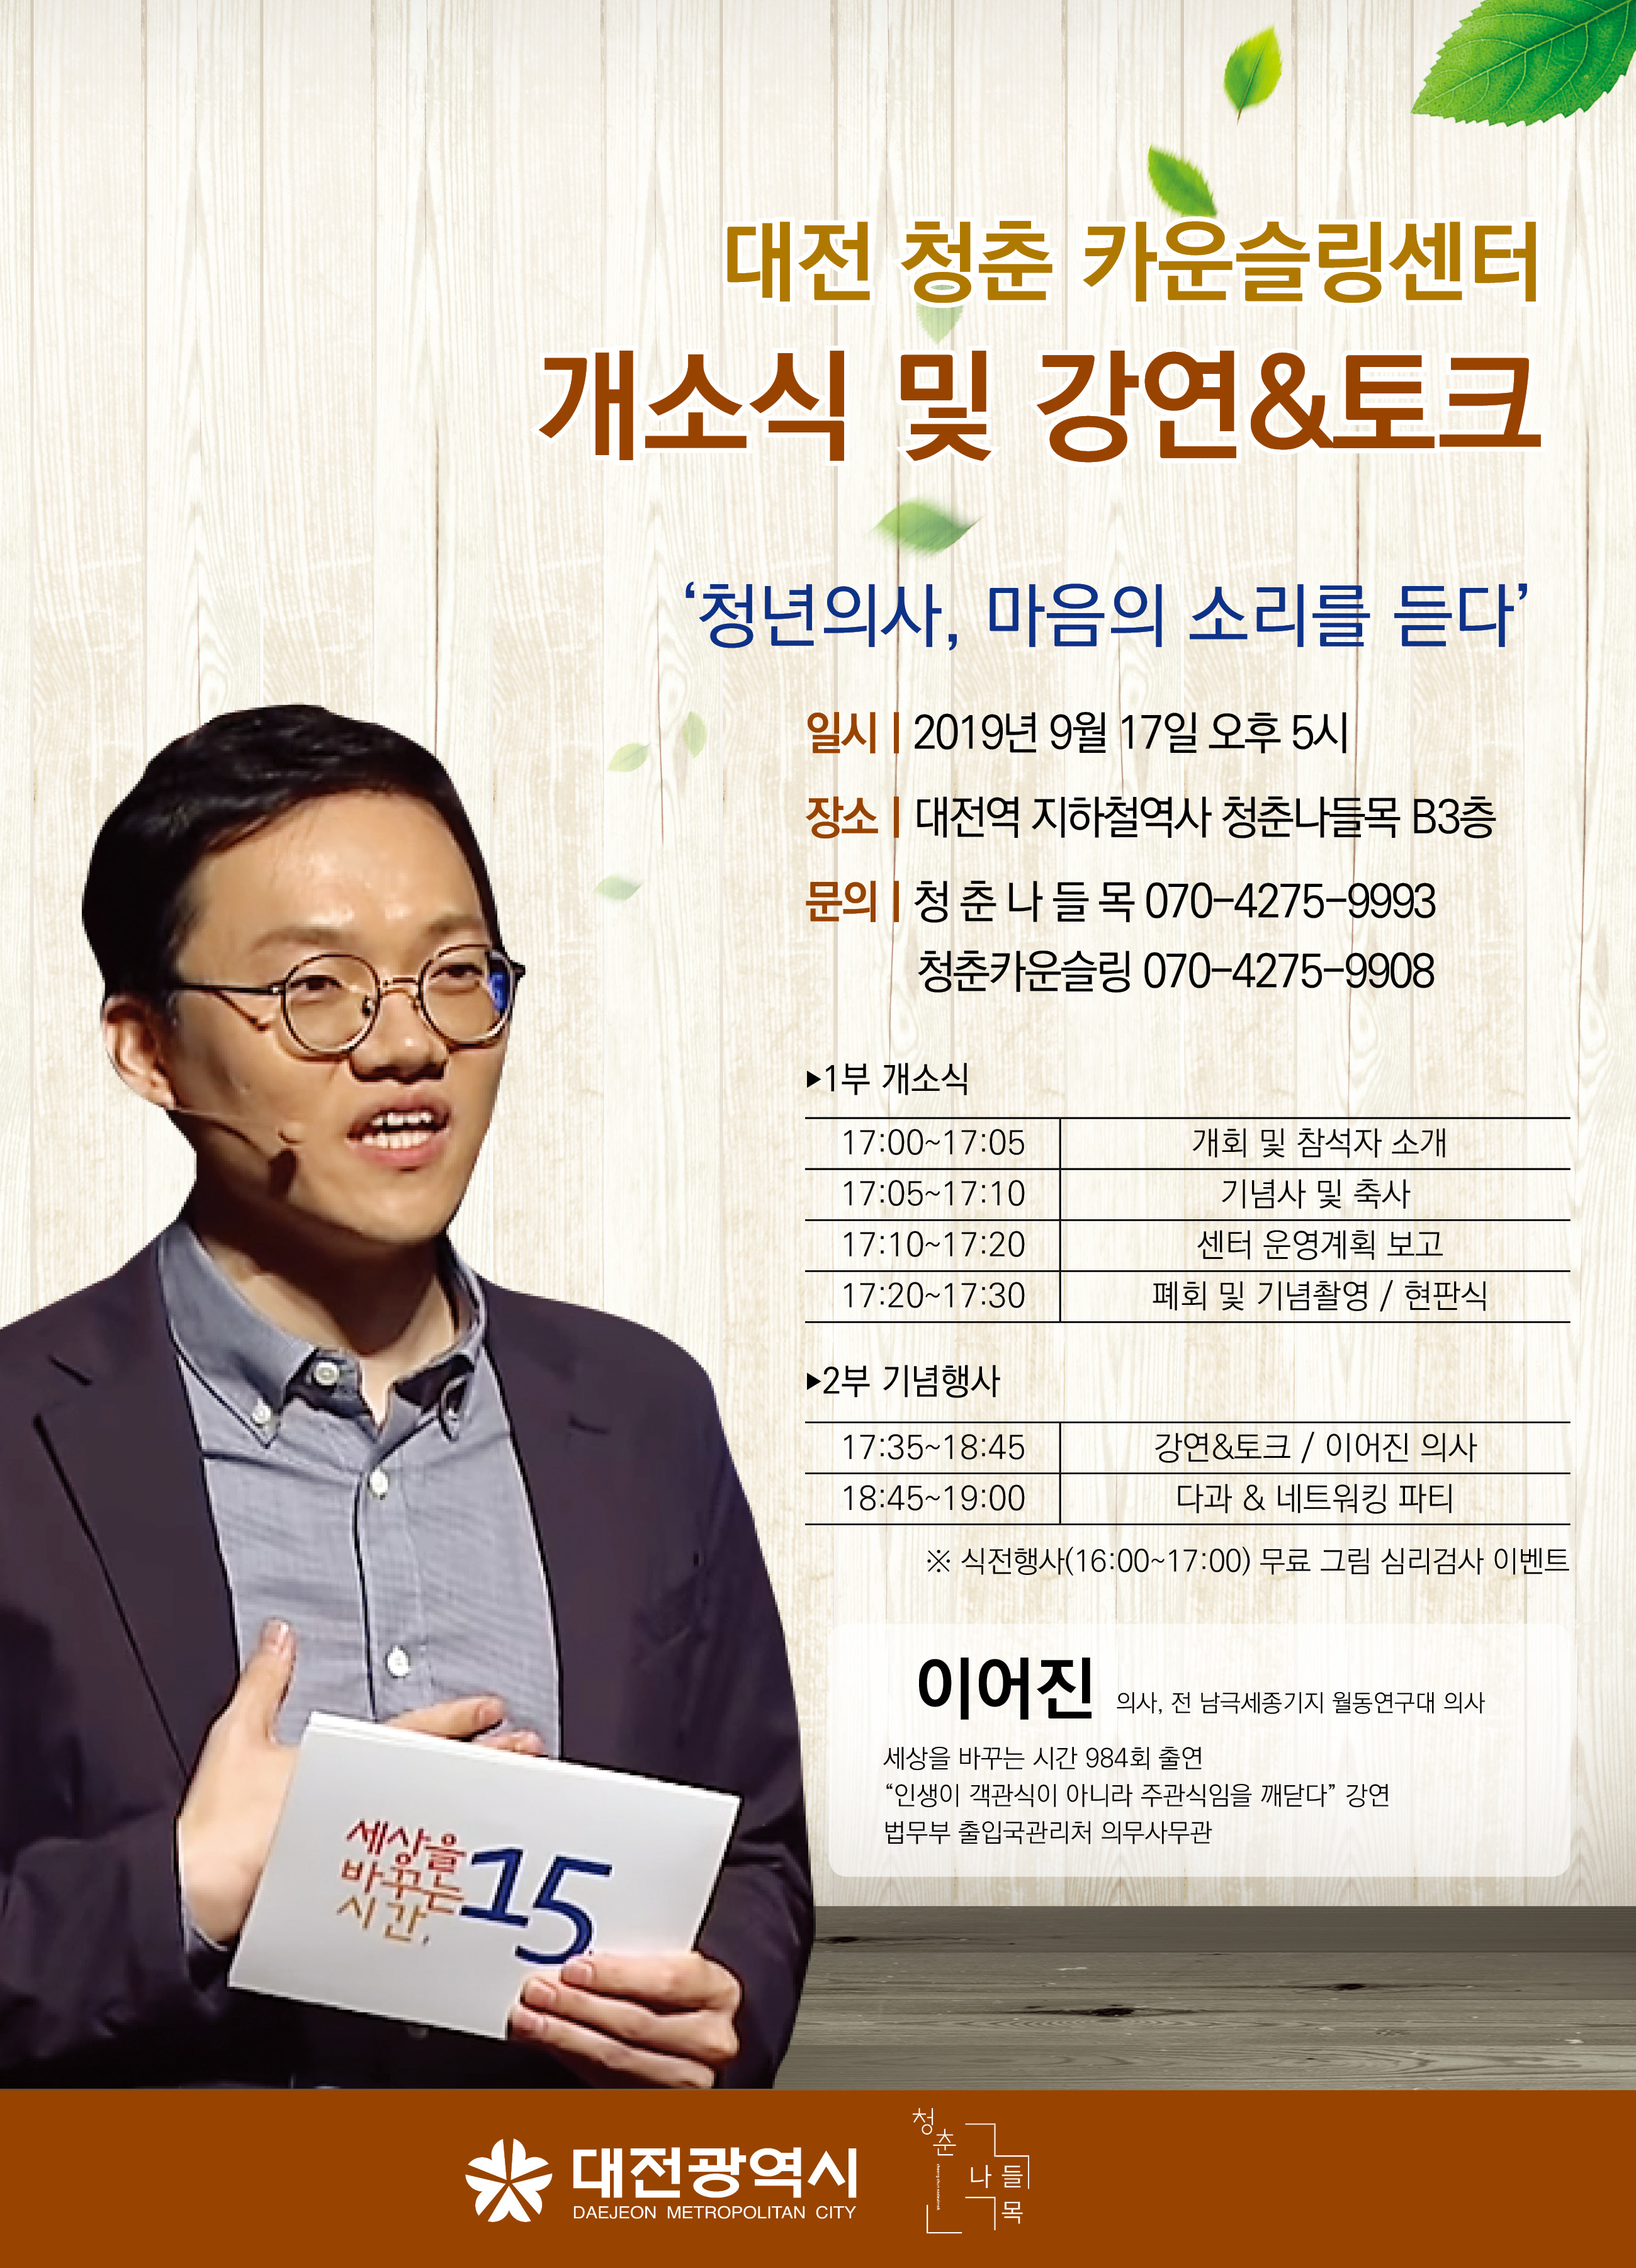 대전 청춘 카운슬링센터 개소식 및 강연&토크  개최